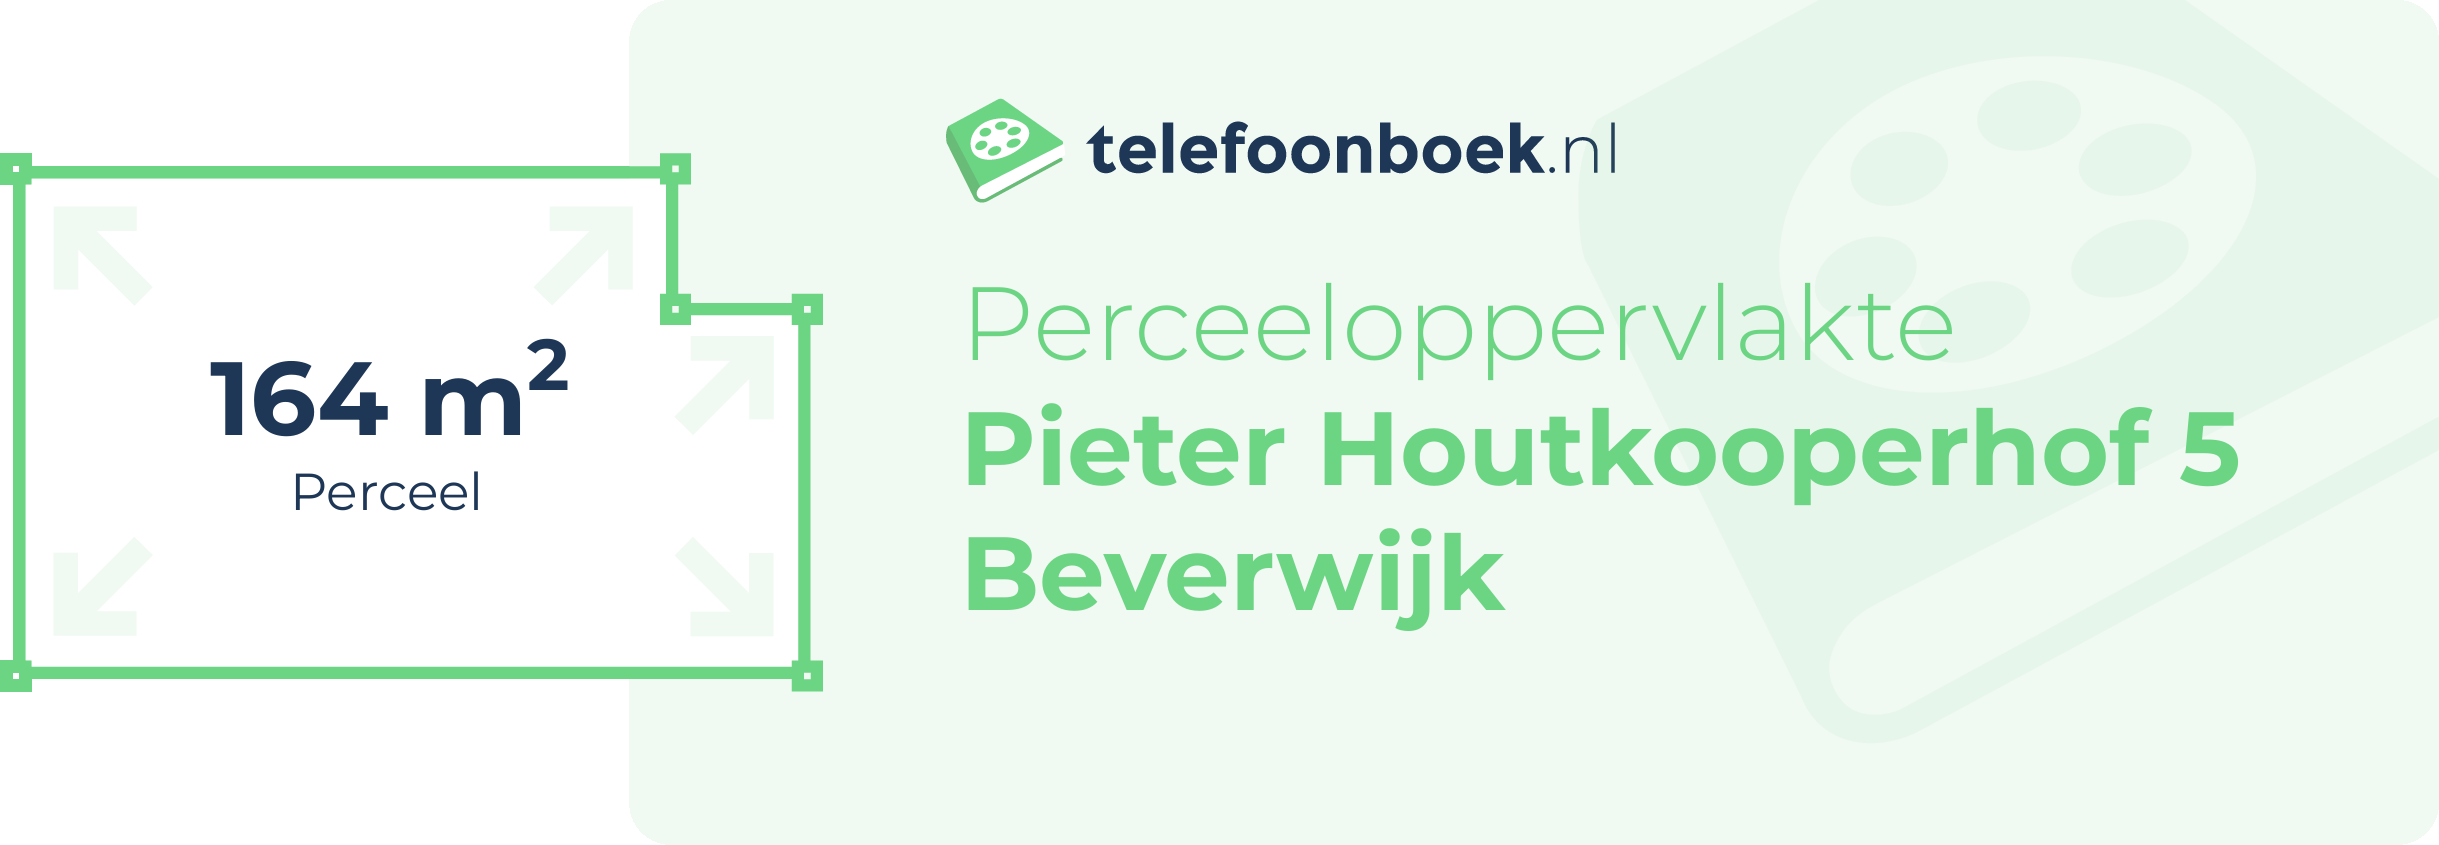 Perceeloppervlakte Pieter Houtkooperhof 5 Beverwijk